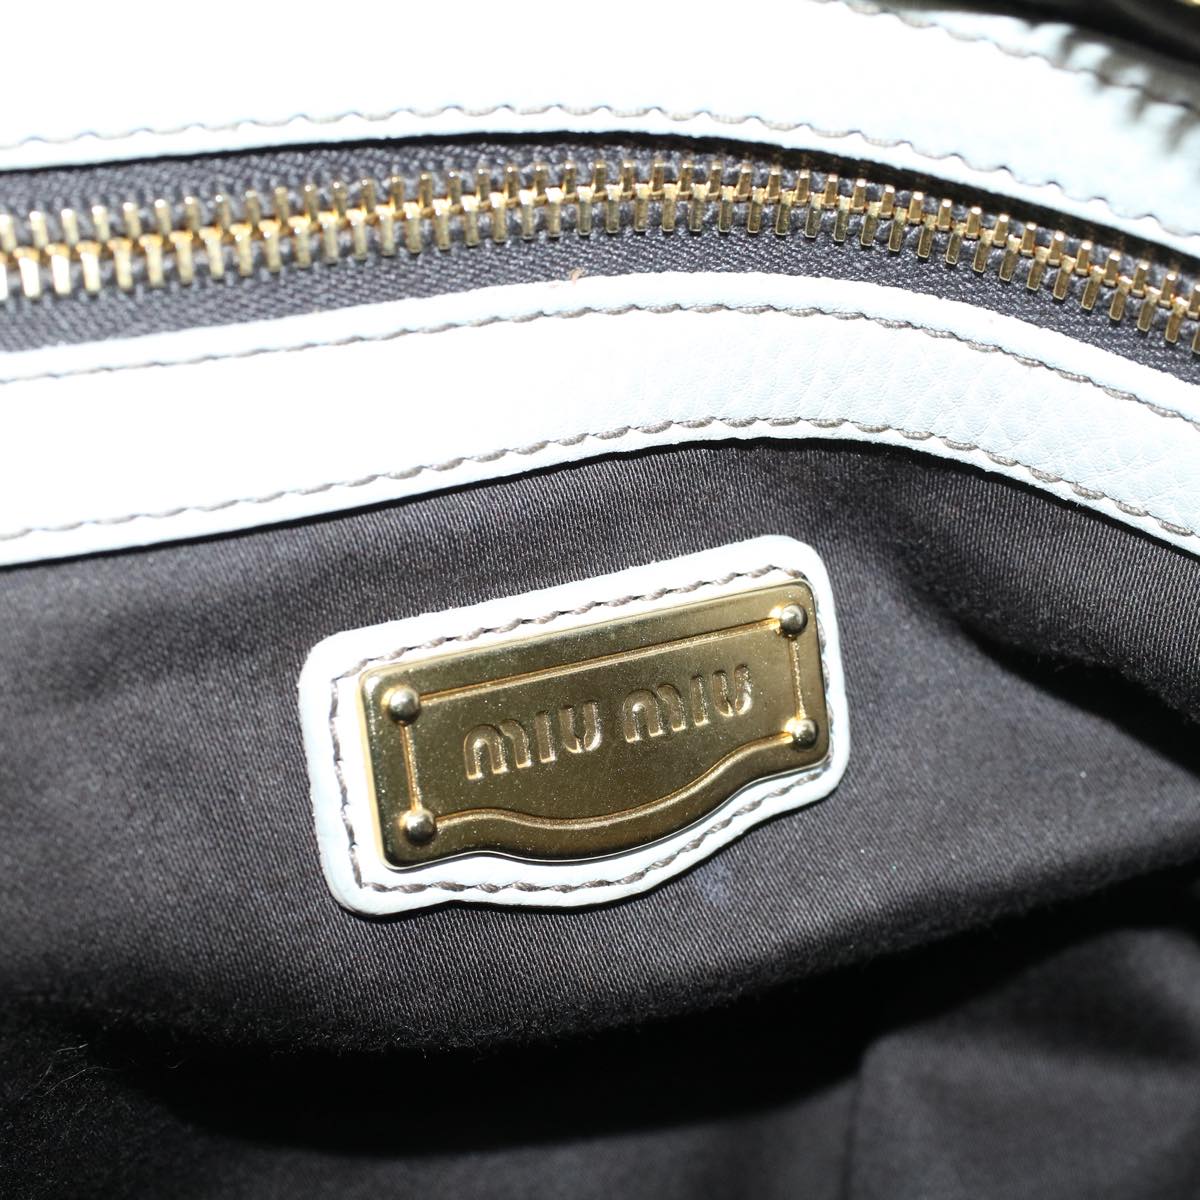 Miu Miu Hand Bag Leather White Auth bs9198